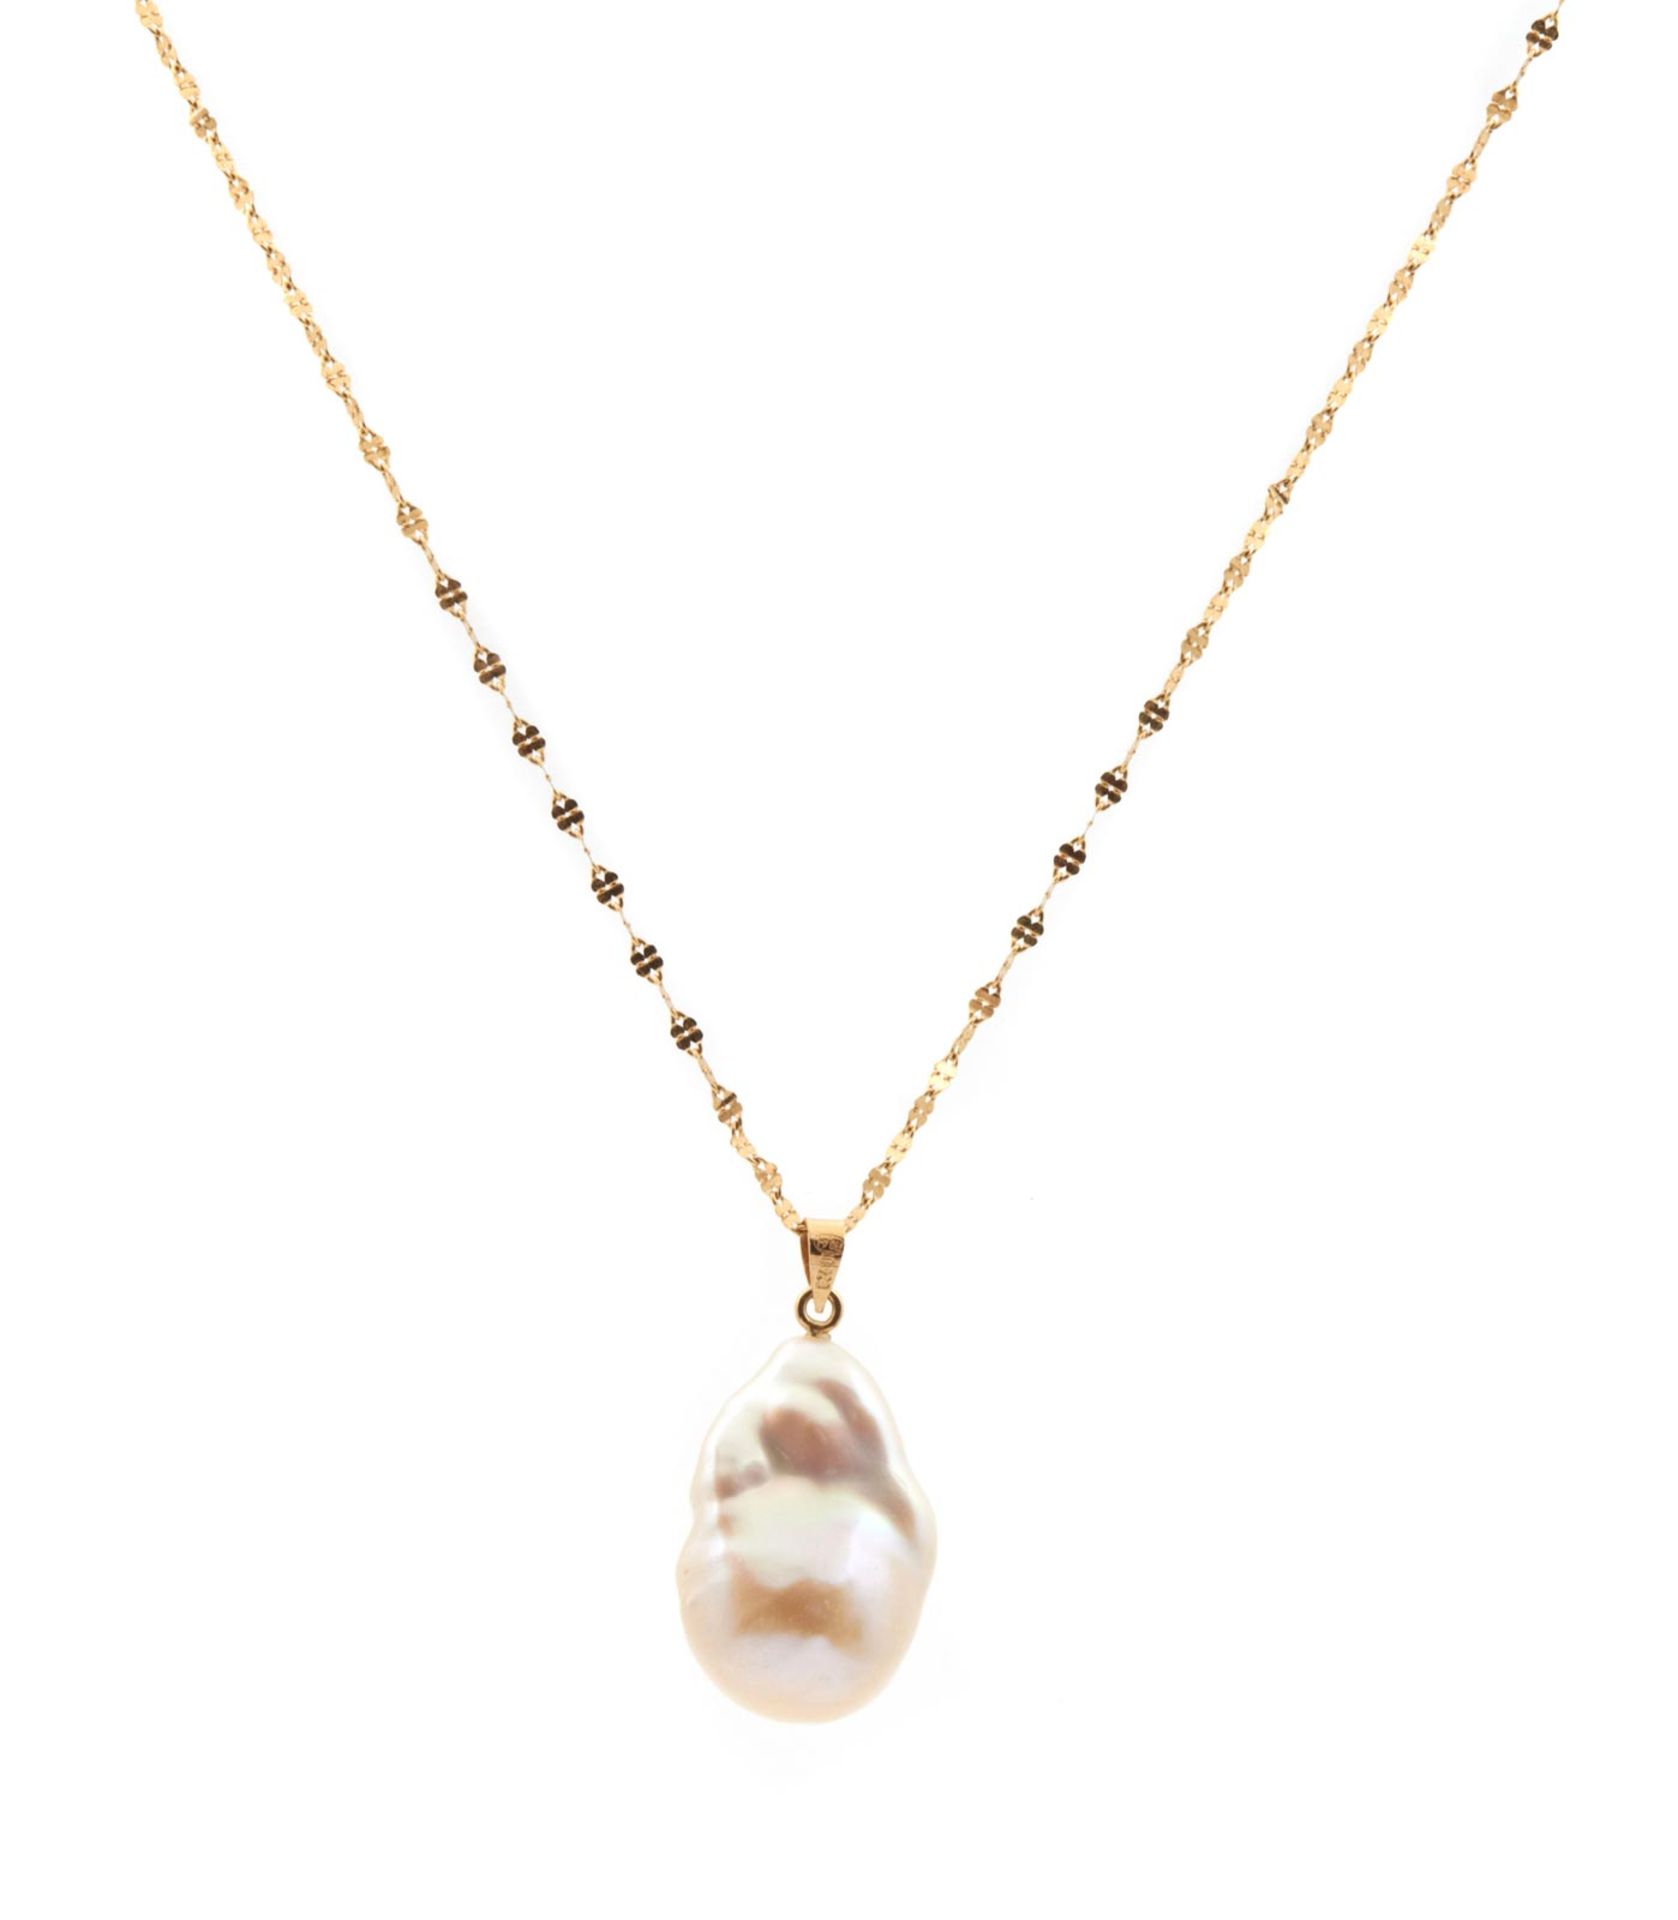 PENDANT En oro de 18 kl. con perla cultivada barroca de 14-15 mm. de diám. 5,8 gr.